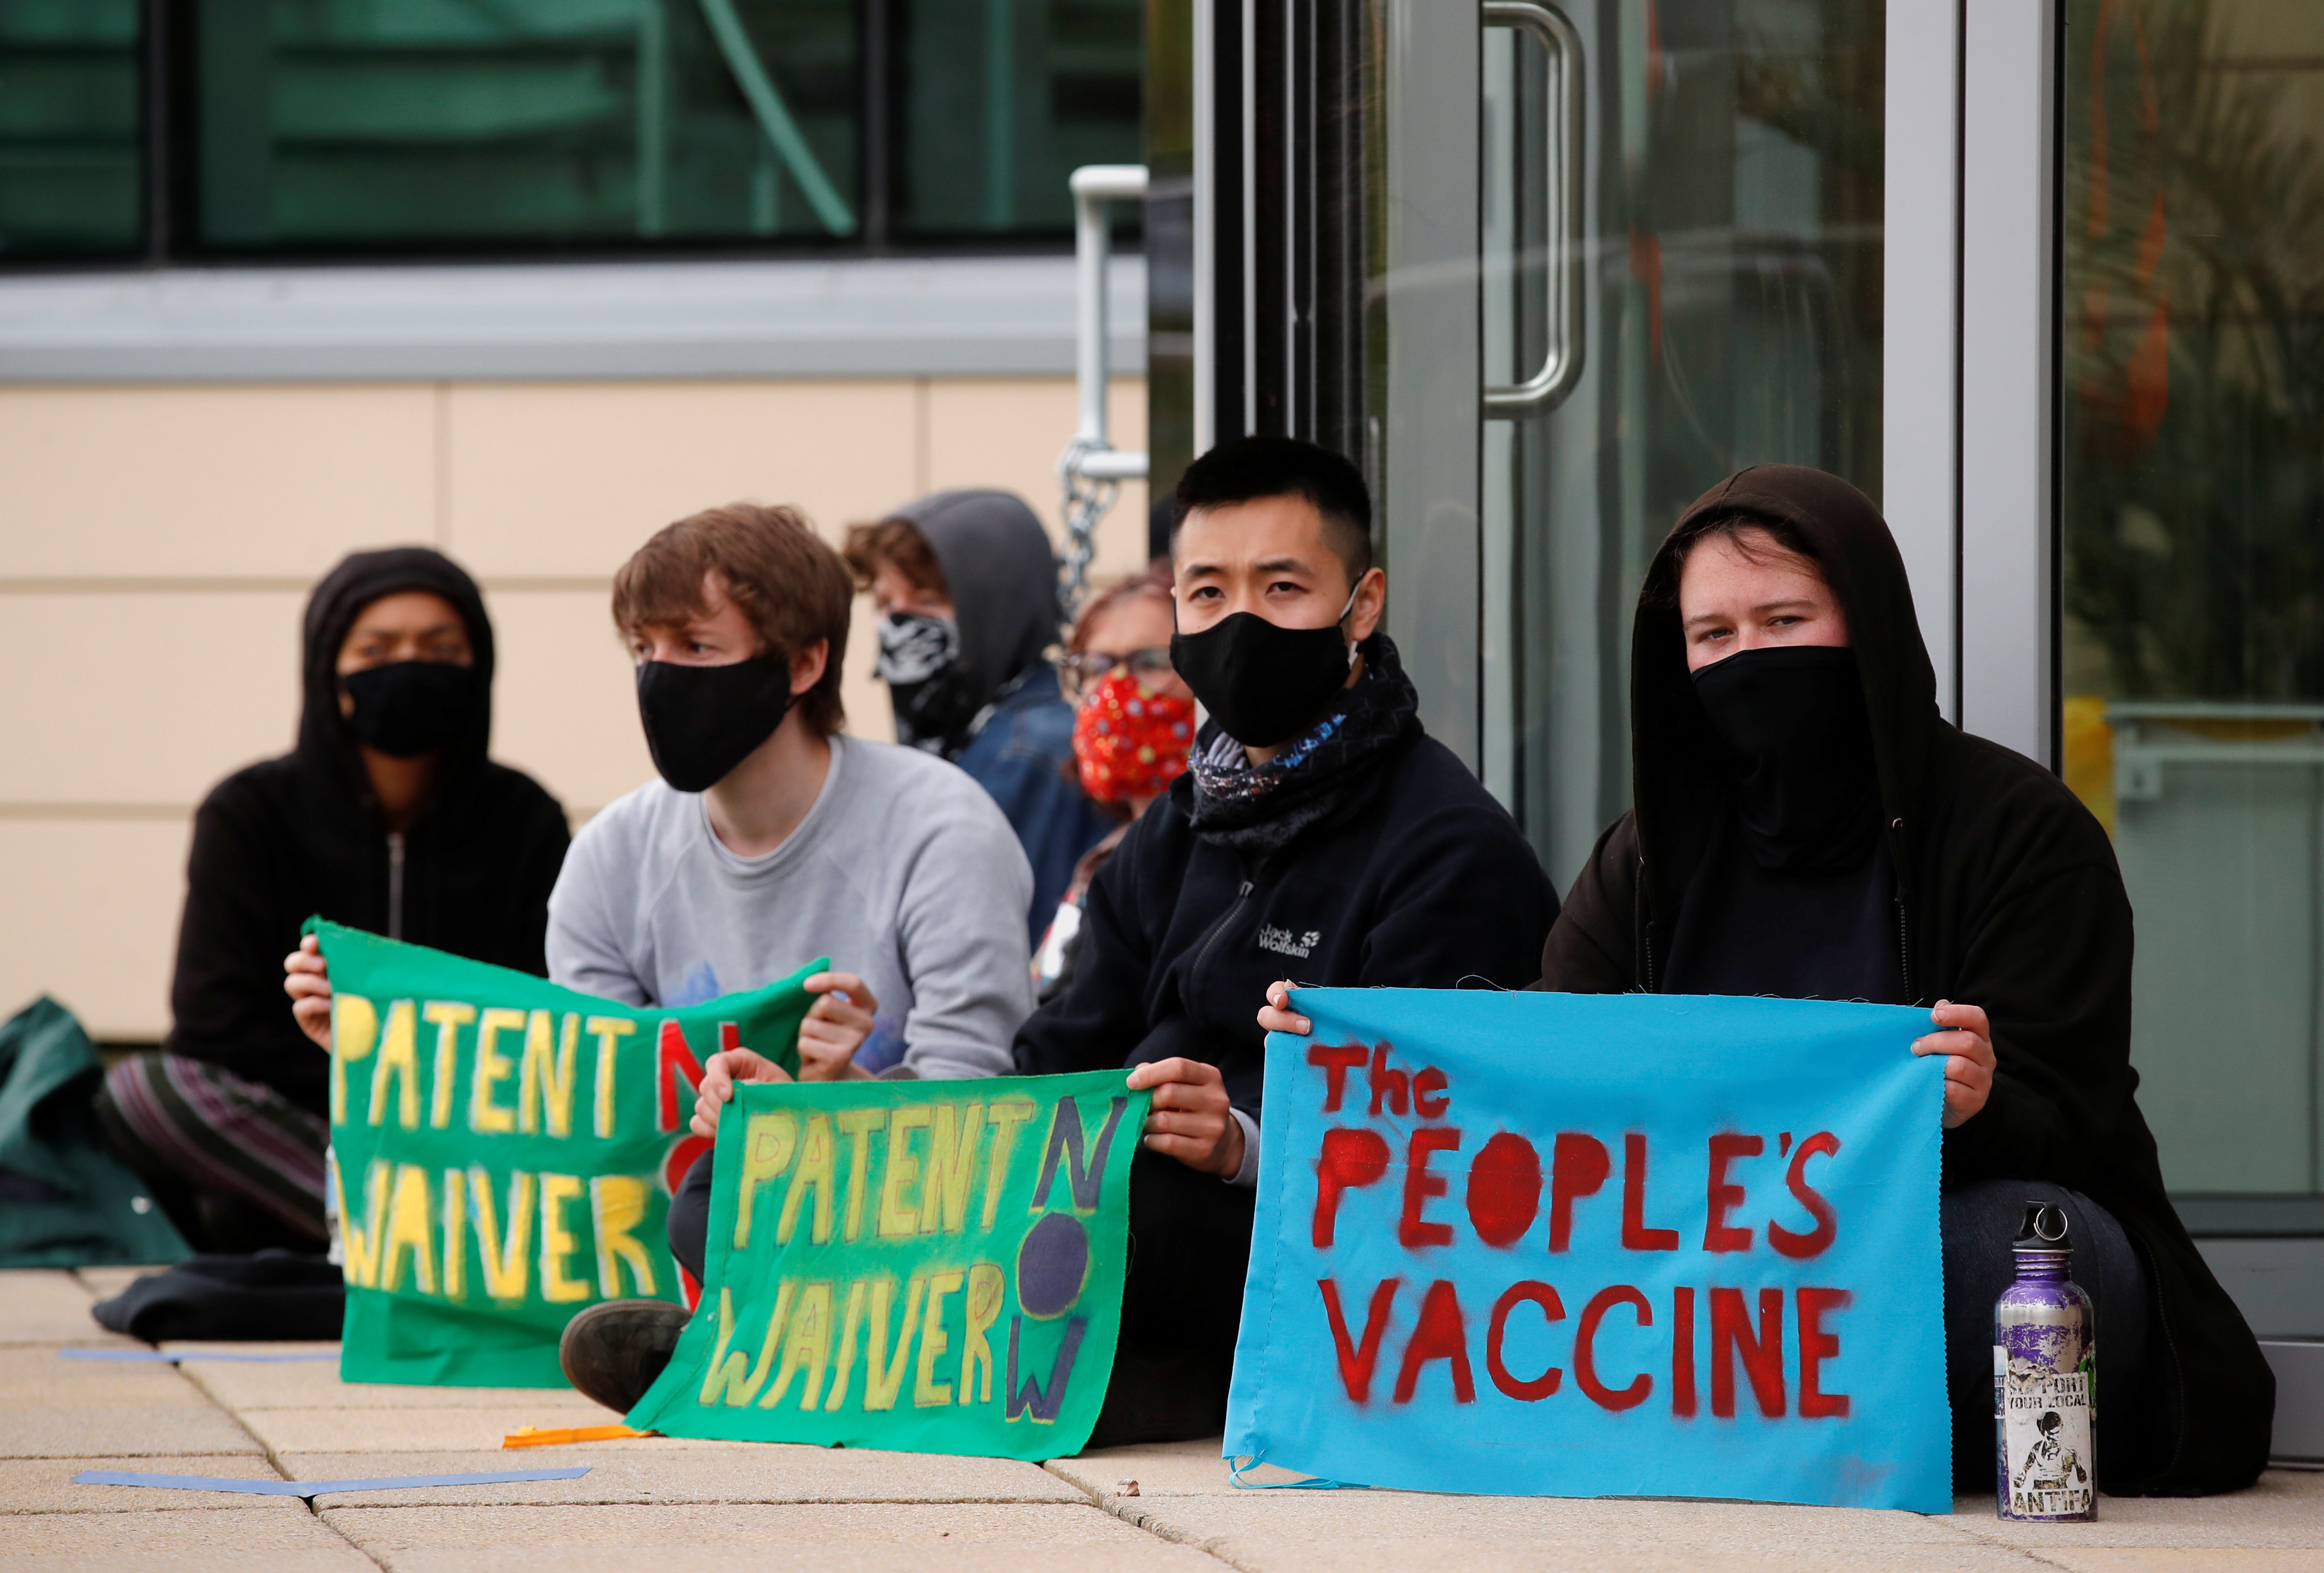 Estudiantes protestan en Cambridge, en la puerta de los laboratorios de AstraZeneca, para que liberen las patentes de sus vacunas contra COVID-19 .  REUTERS/Andrew Couldridge